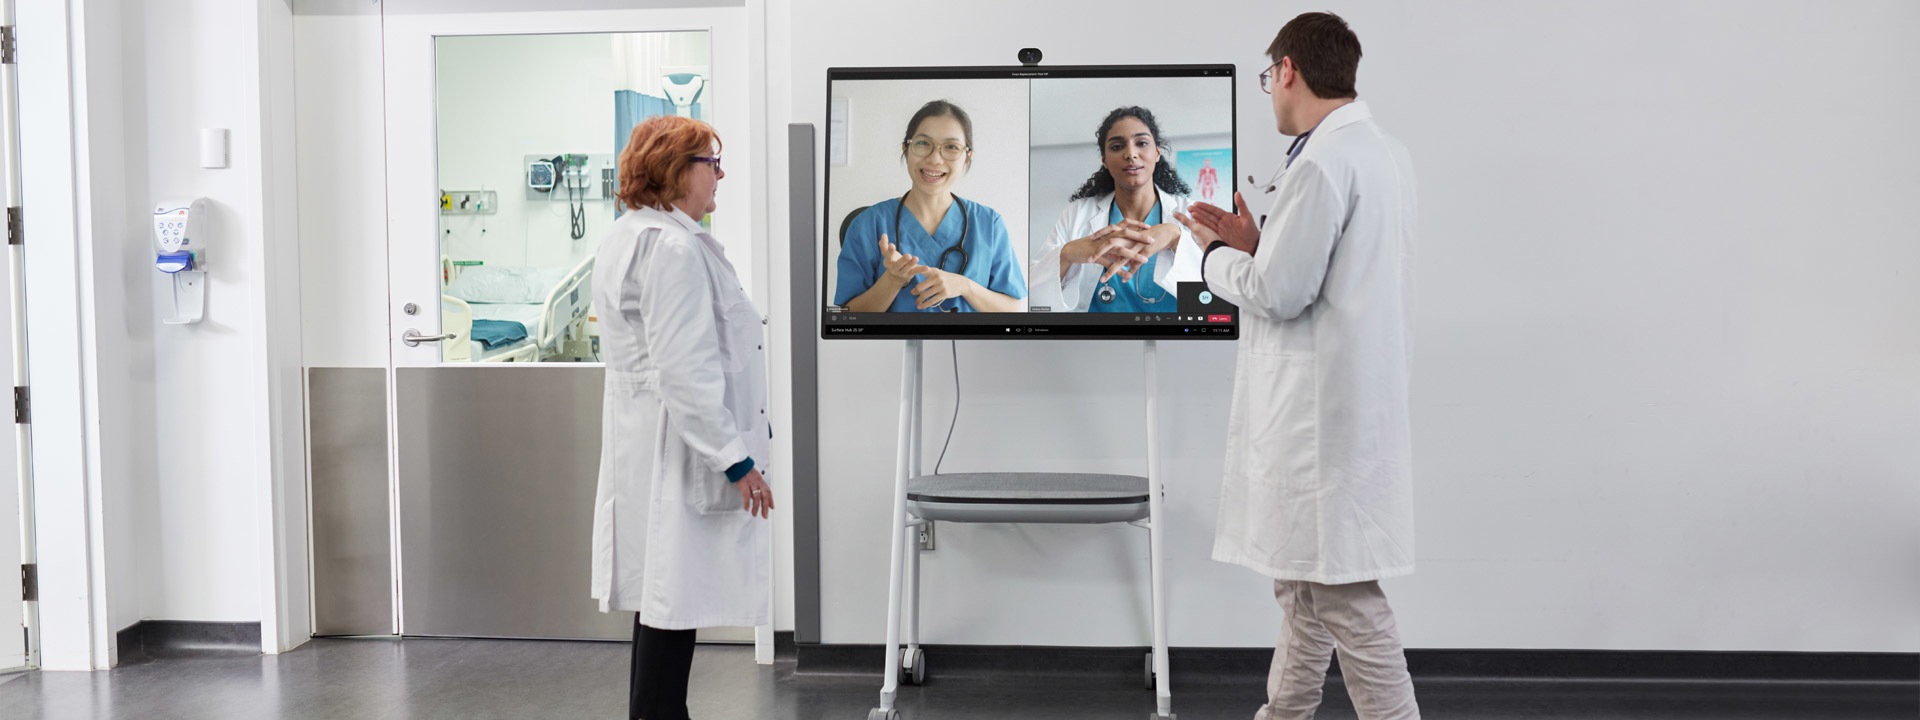 Dwóch pracowników medycznych uczestniczących w rozmowie wideo Teams w szpitalu